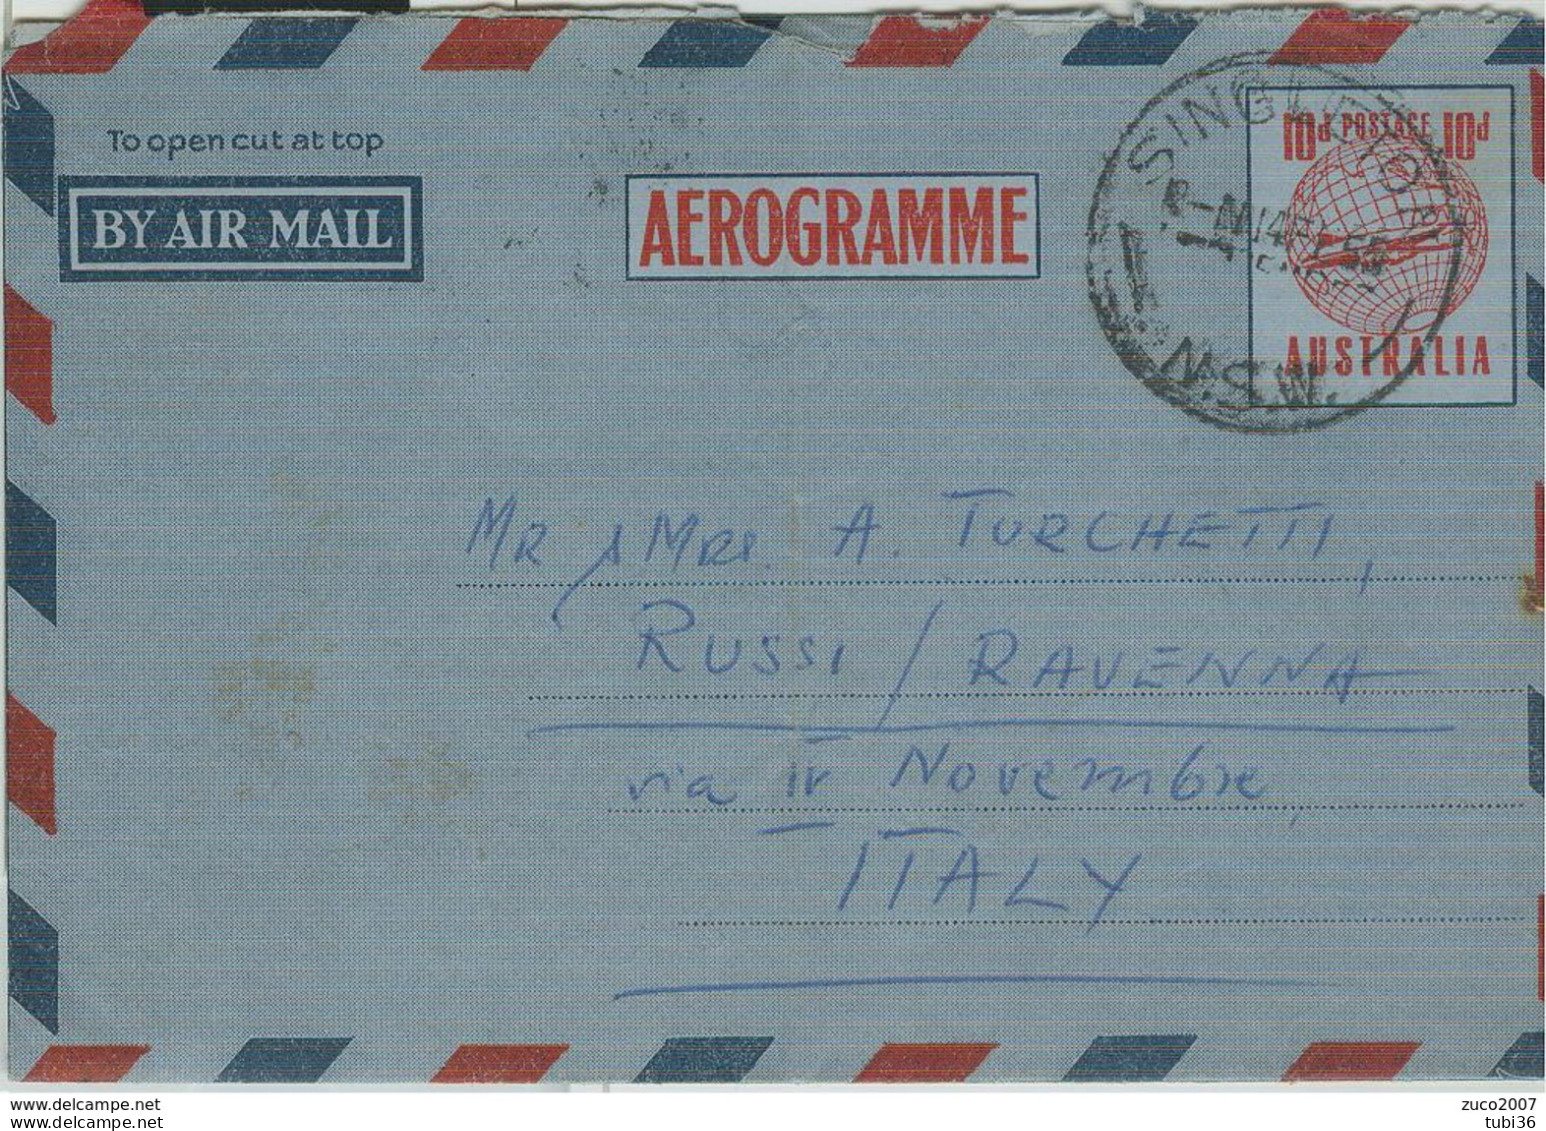 AUSTRALIA-AEROGRAMME- STAMPING SINGLETON, FOR ITALY, 1955, - Aerogramme